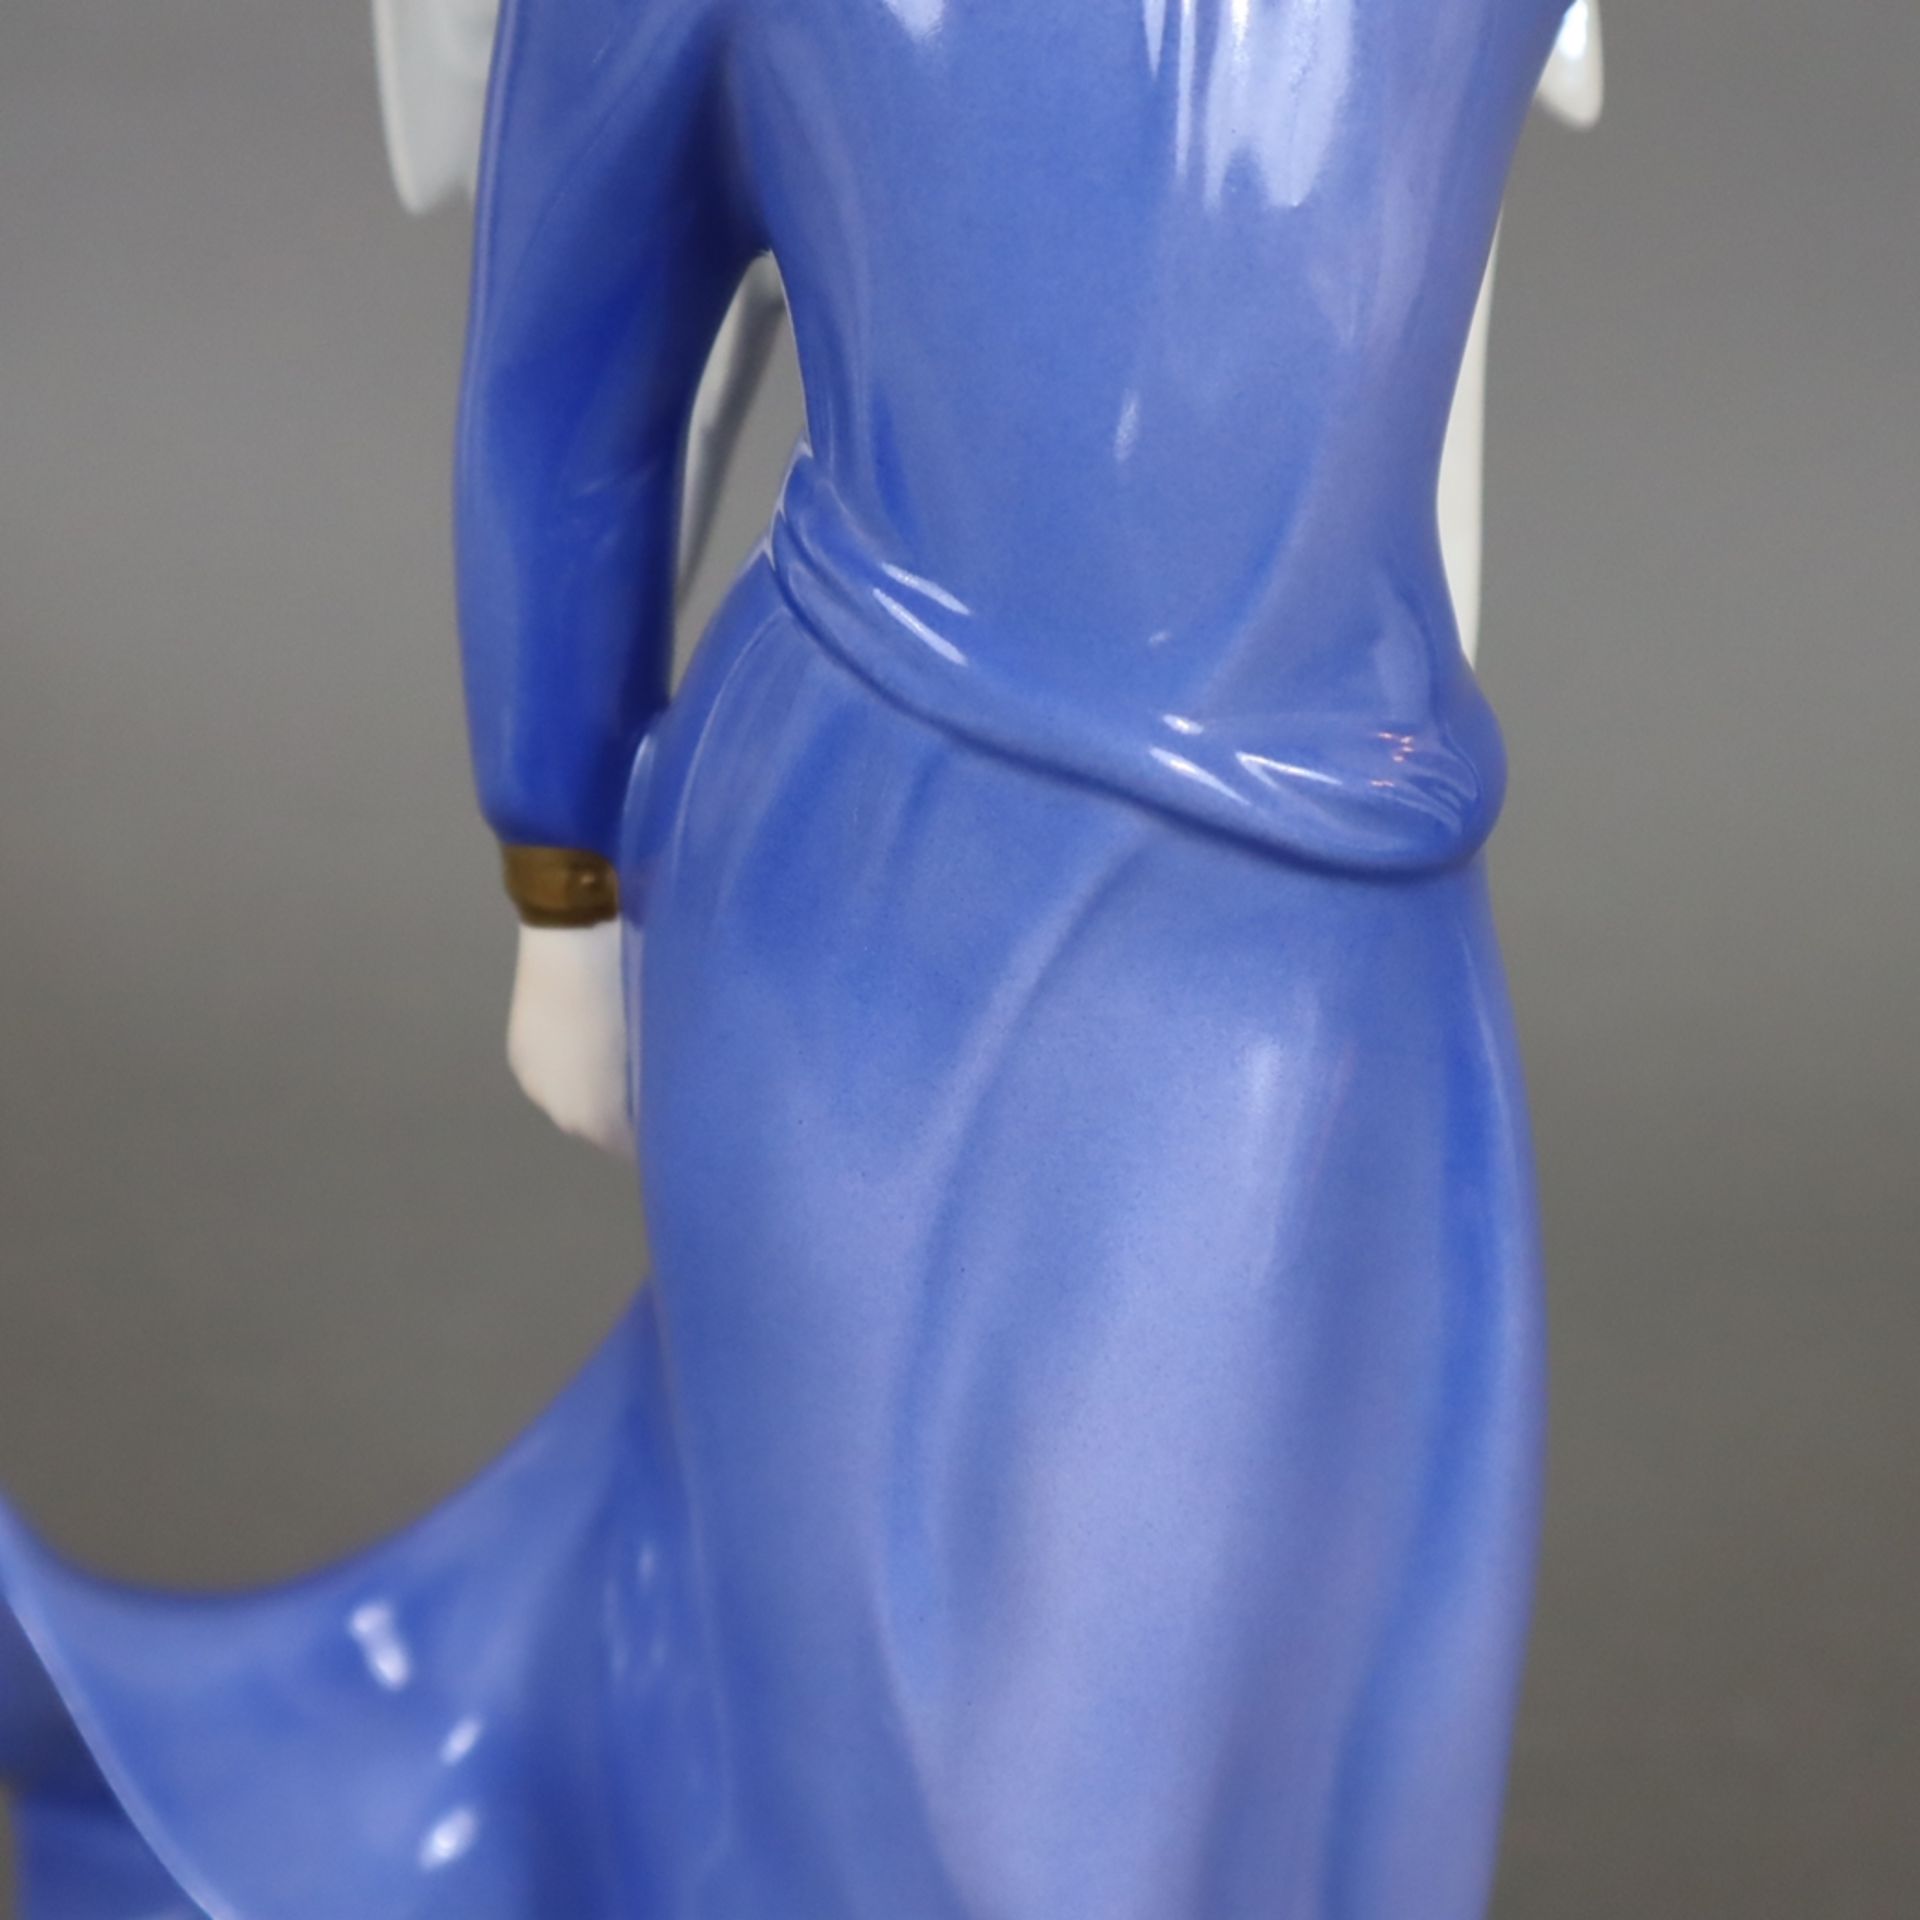 Figur "Engel" - Goebel, Keramik, polychrom bemalt, gepresste Modellnr. 41 152 30, Boden mit Manufak - Image 5 of 7